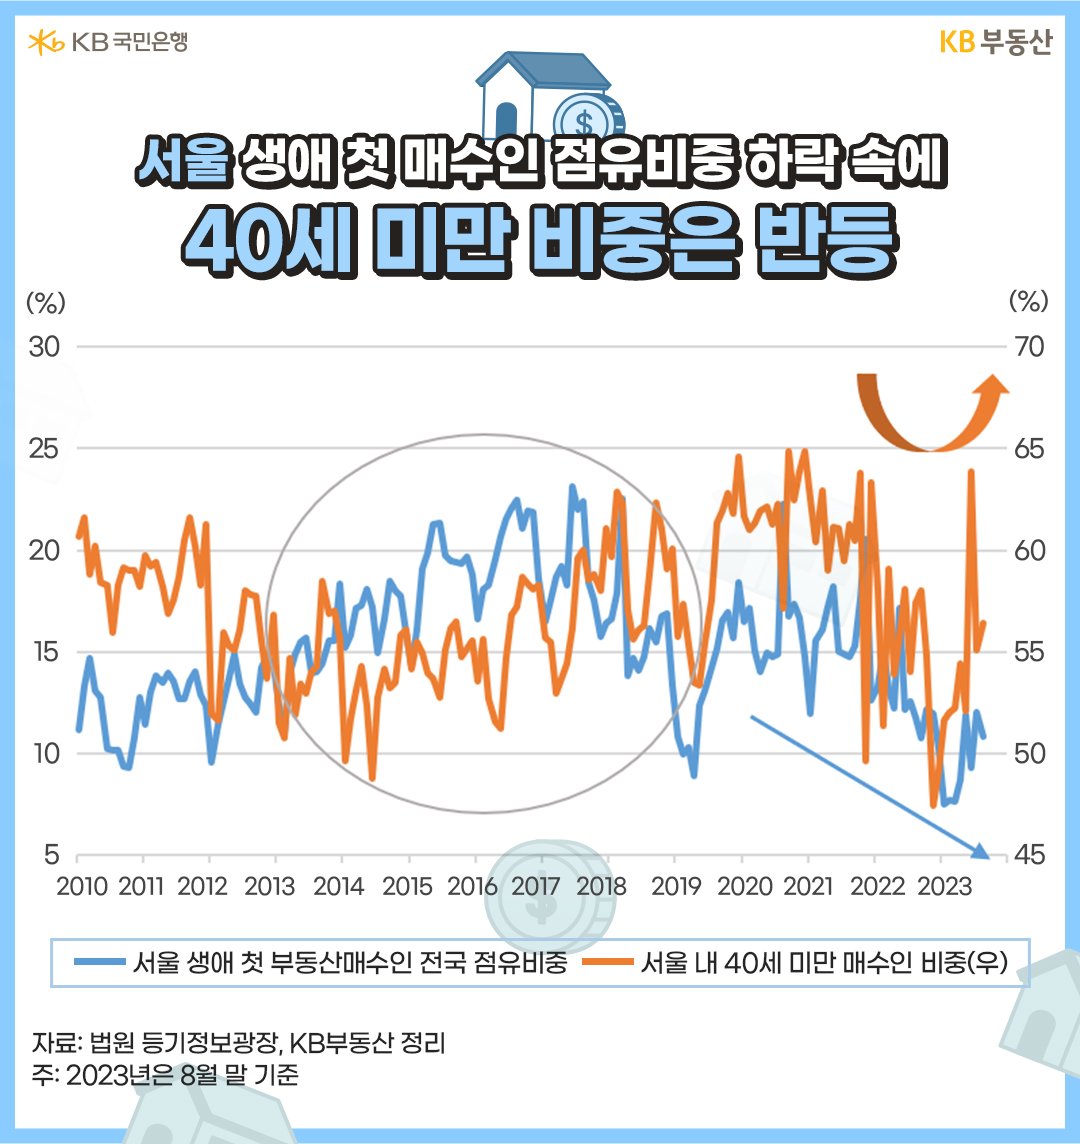 ‘서울 생애 첫 부동산매수인’이 전국에서 차지하는 비중은 2019년부터 '서울 아파트가격이 레벨업'되면서 '서울 매수인 비중'이 눈에 띄게 줄었음. 한편 ‘서울에서 40세 미만 매수인 비중’은 2014~2018년 꾸준히 늘면서 ‘서울에서 40세 미만 매수인 비중’은 빠르게 반등하는 모습.